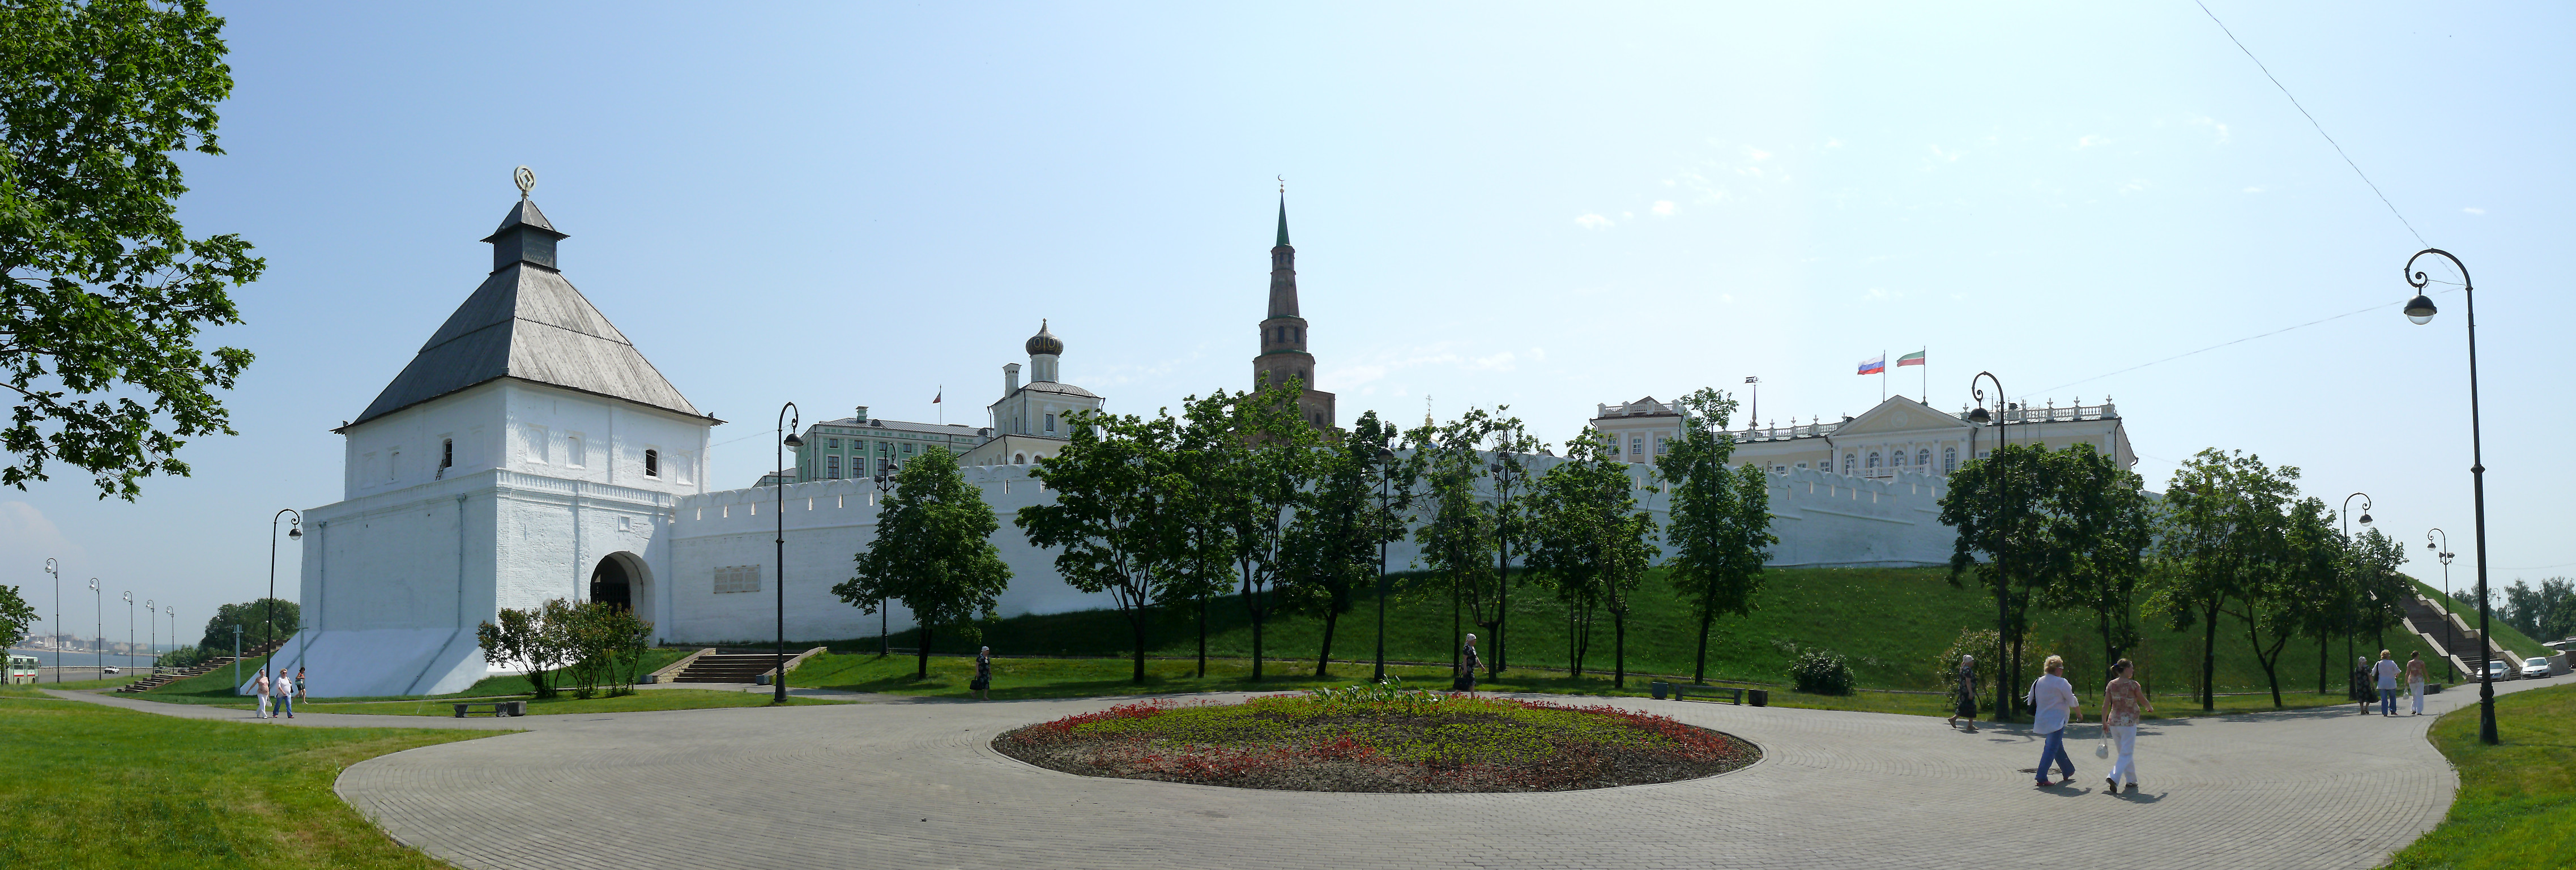 юго западная башня казанского кремля